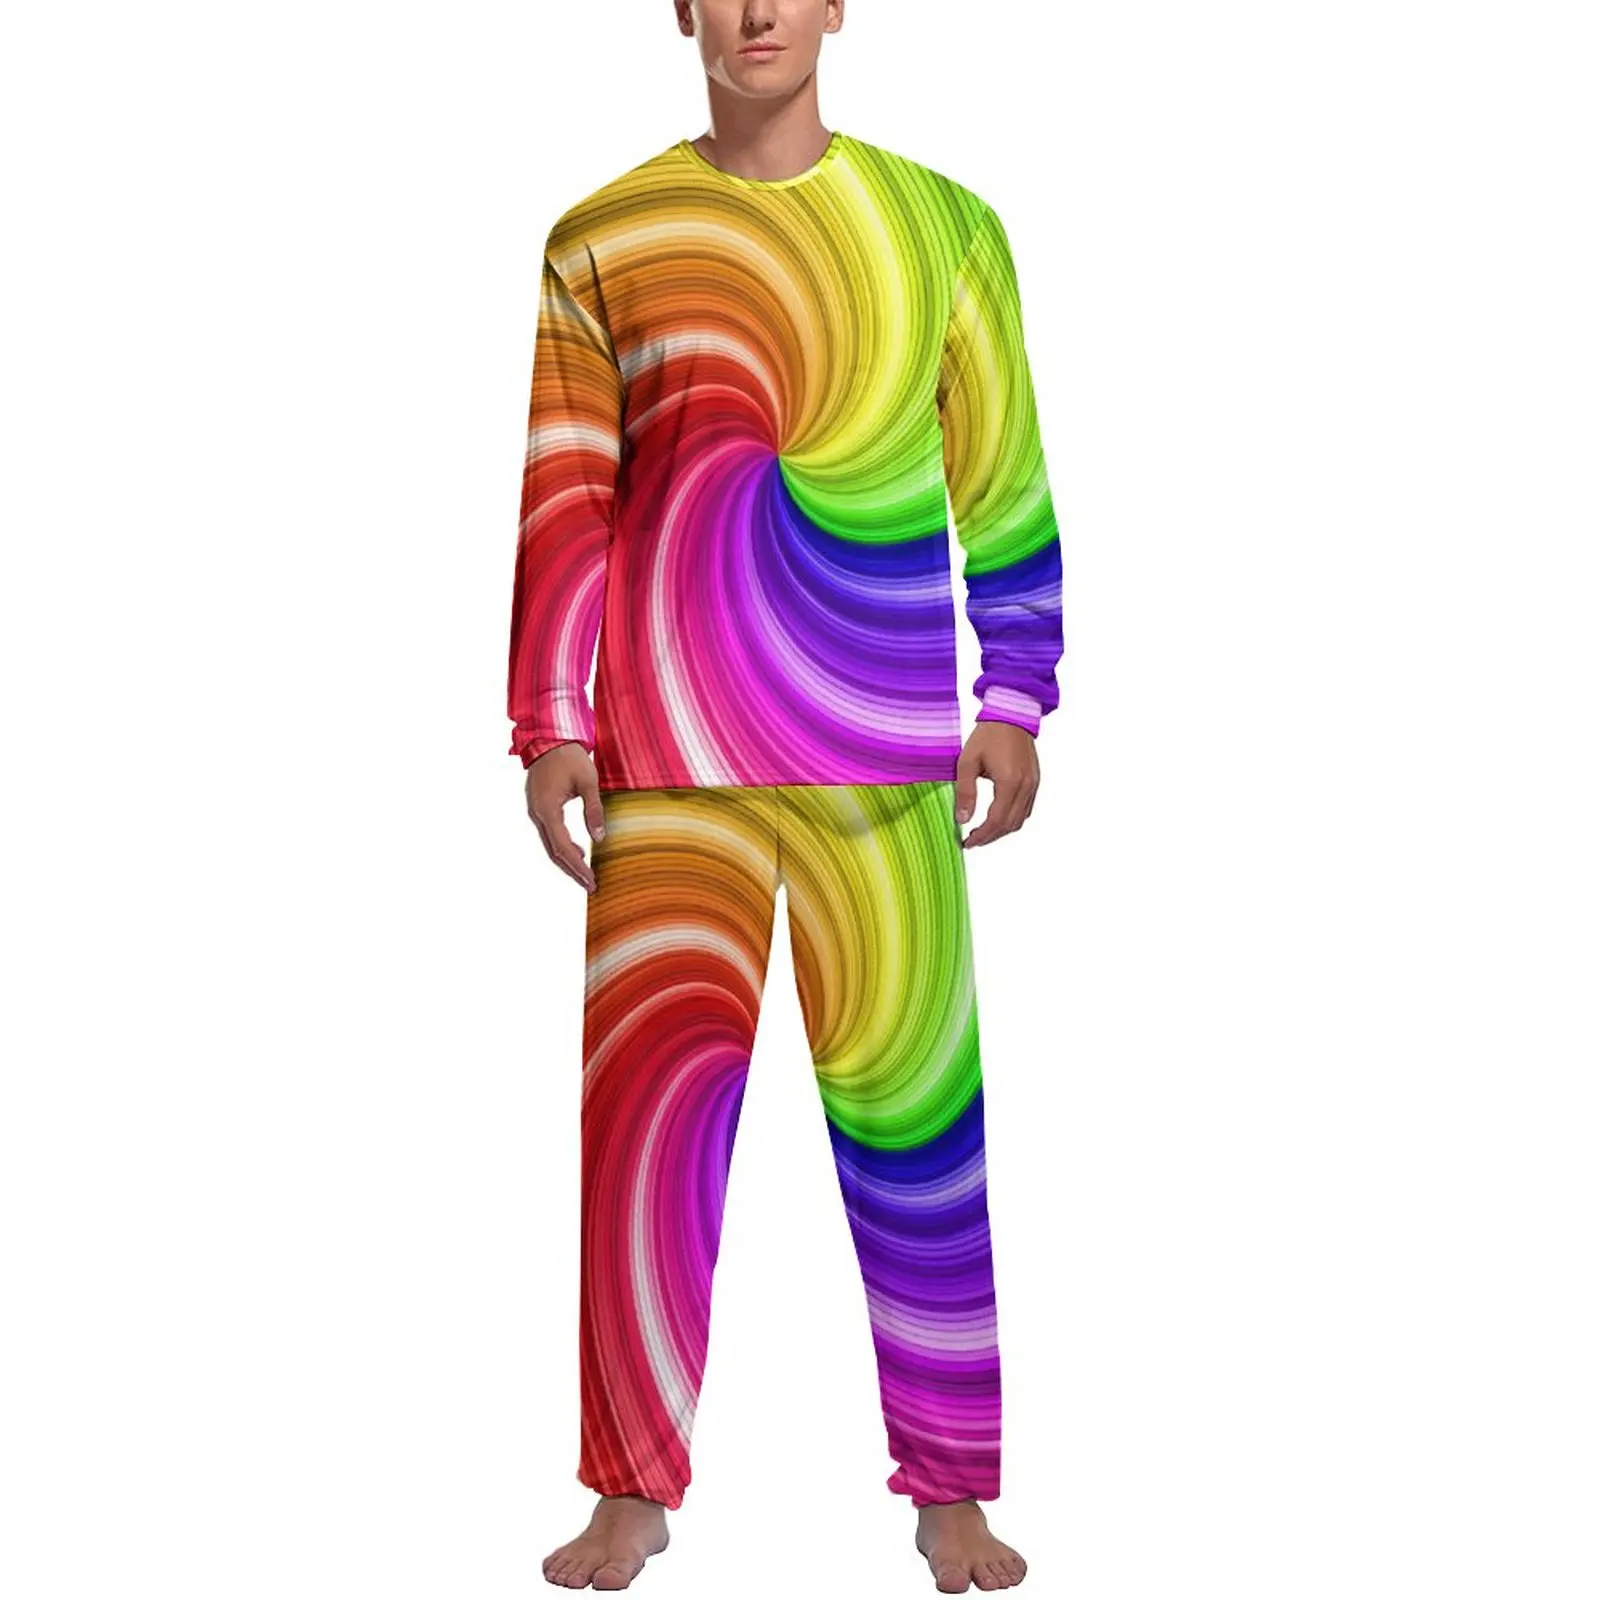 Colorful Tie Dye Pajamas Autumn Rainbow Swirl Art Casual Nightwear Male 2 Pieces Design Long Sleeve Romantic Pajamas Set